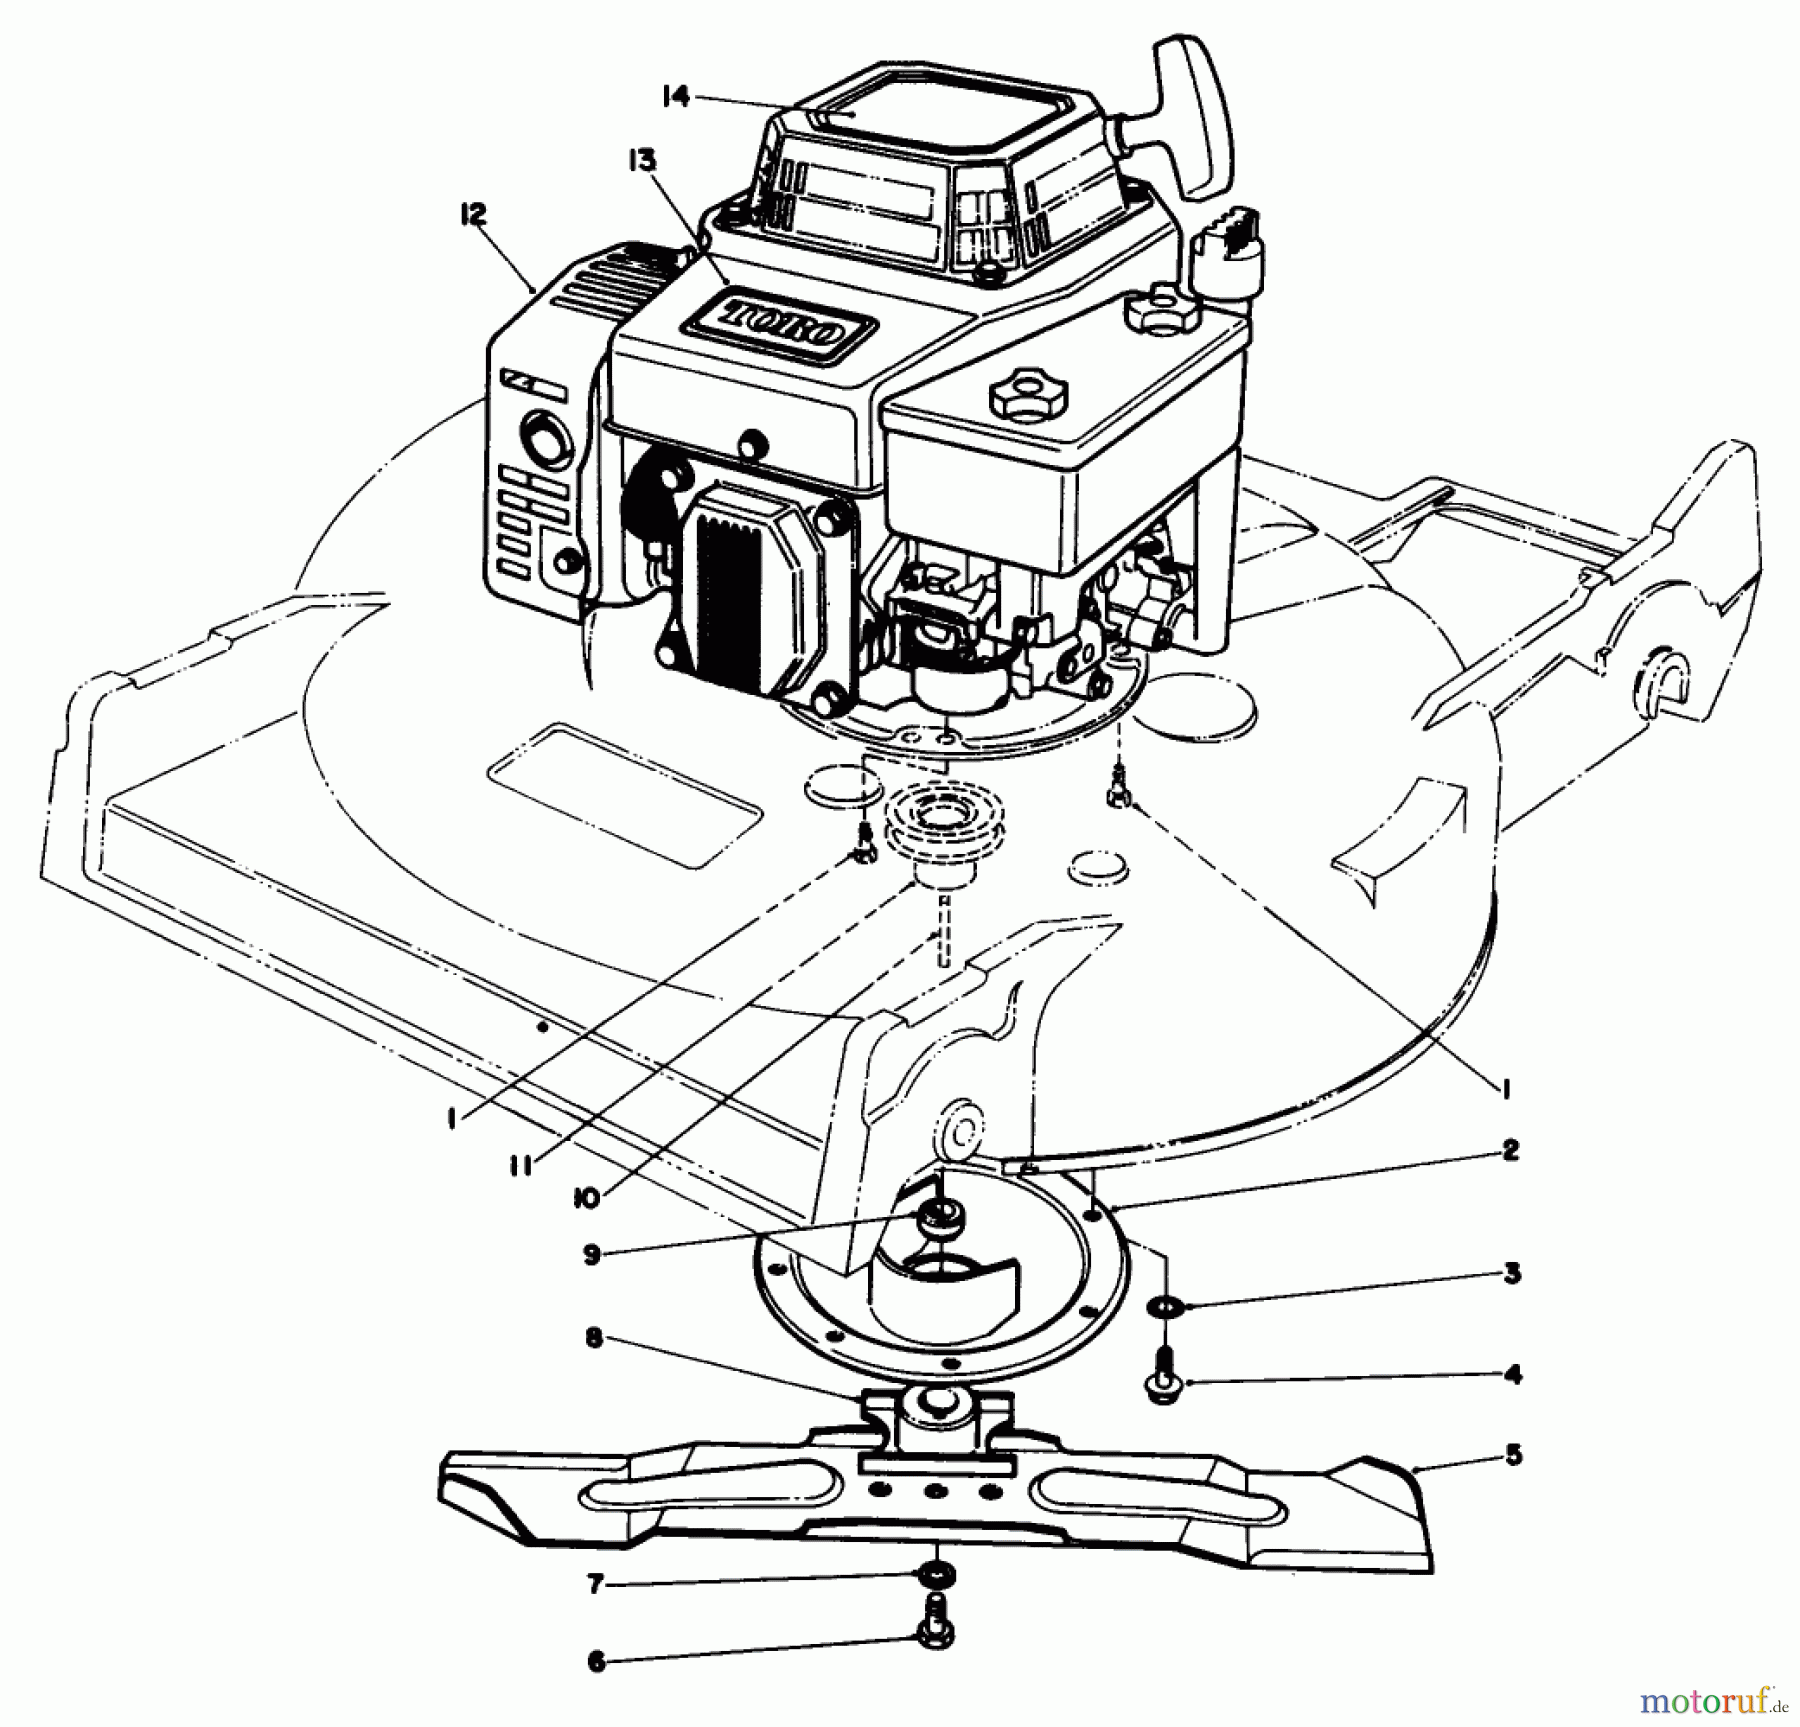  Toro Neu Mowers, Walk-Behind Seite 2 22621 - Toro Lawnmower, 1987 (7000001-7999999) ENGINE ASSEMBLY (MODEL NO. 22621)